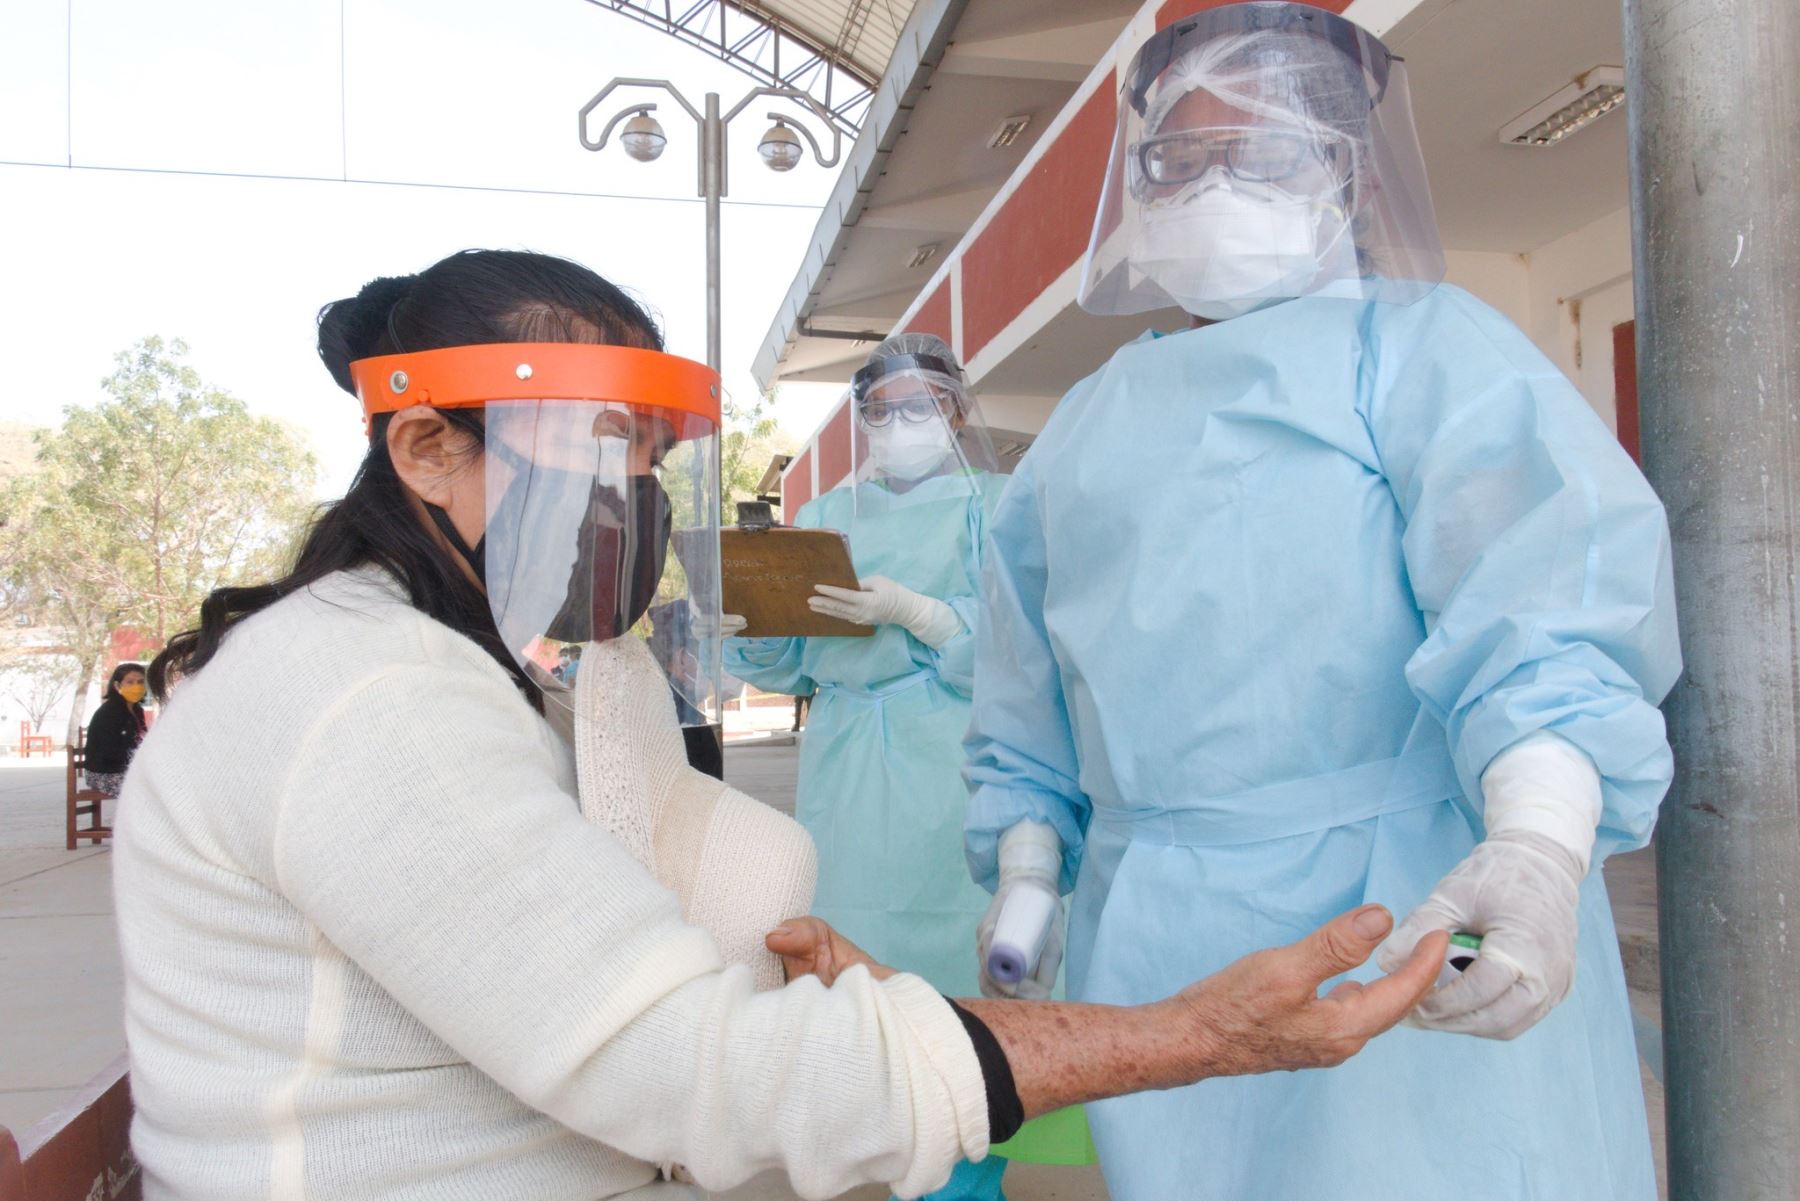 Pobladores de Sullana acceden a centros rápidos de atención para casos covid que implementó el Ministerio de Salud en dicha provincia de Piura para la detección temprana de coronavirus.